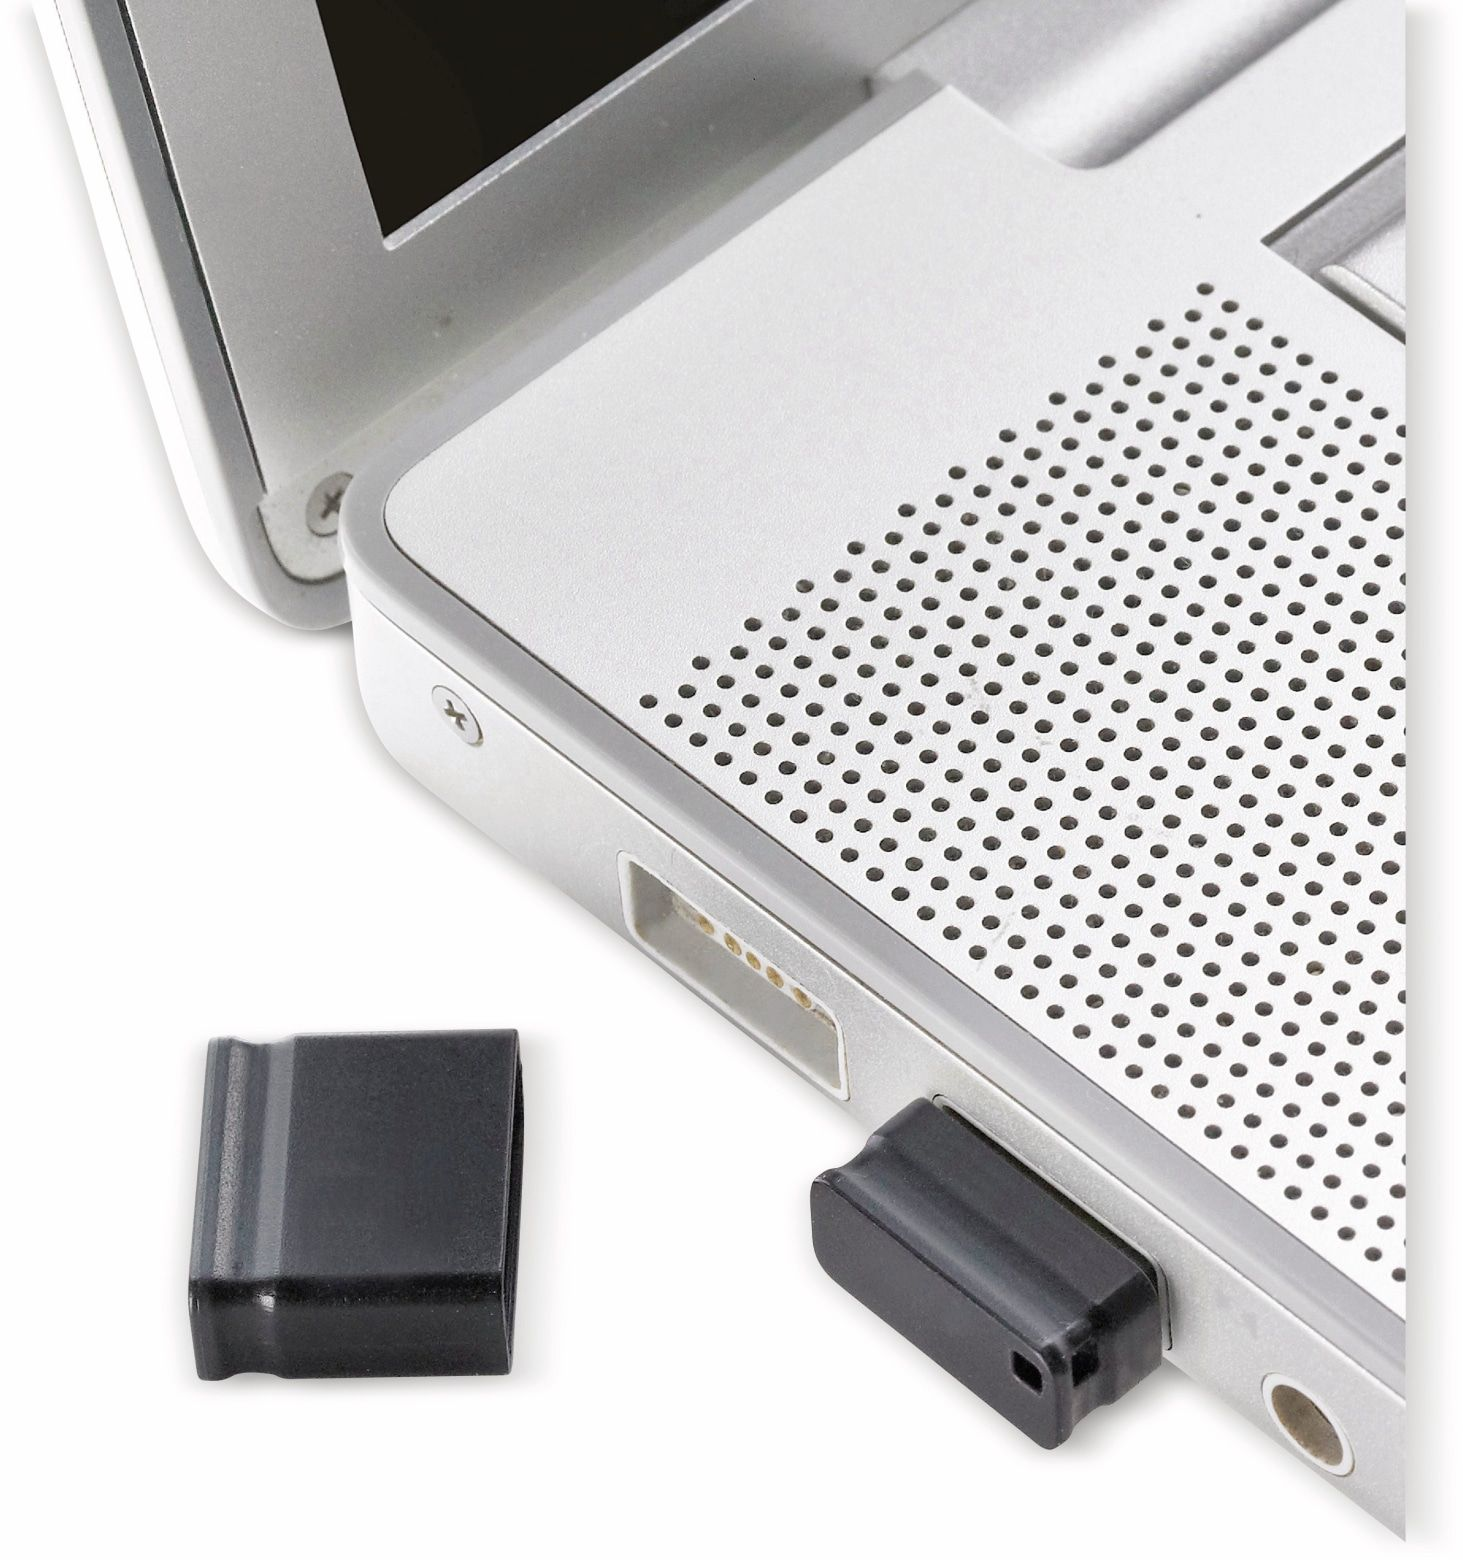 LINE INTENSO USB-Stick 3500470 (Schwarz, 16GB 16 MICRO GB)